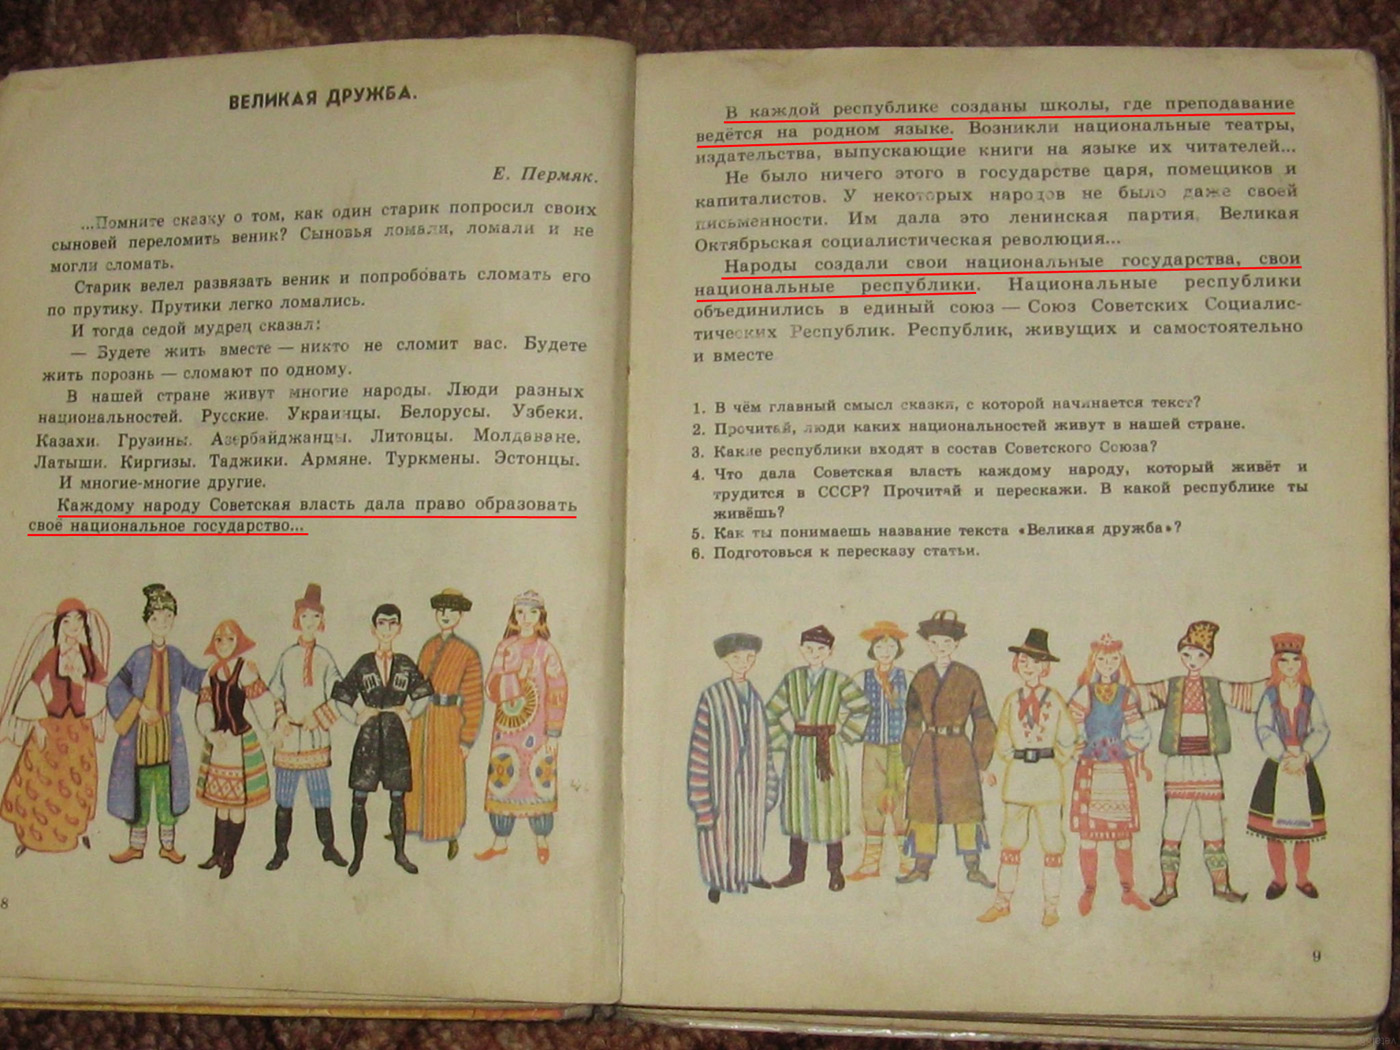 Почему советские образцы развития были близки болгарии